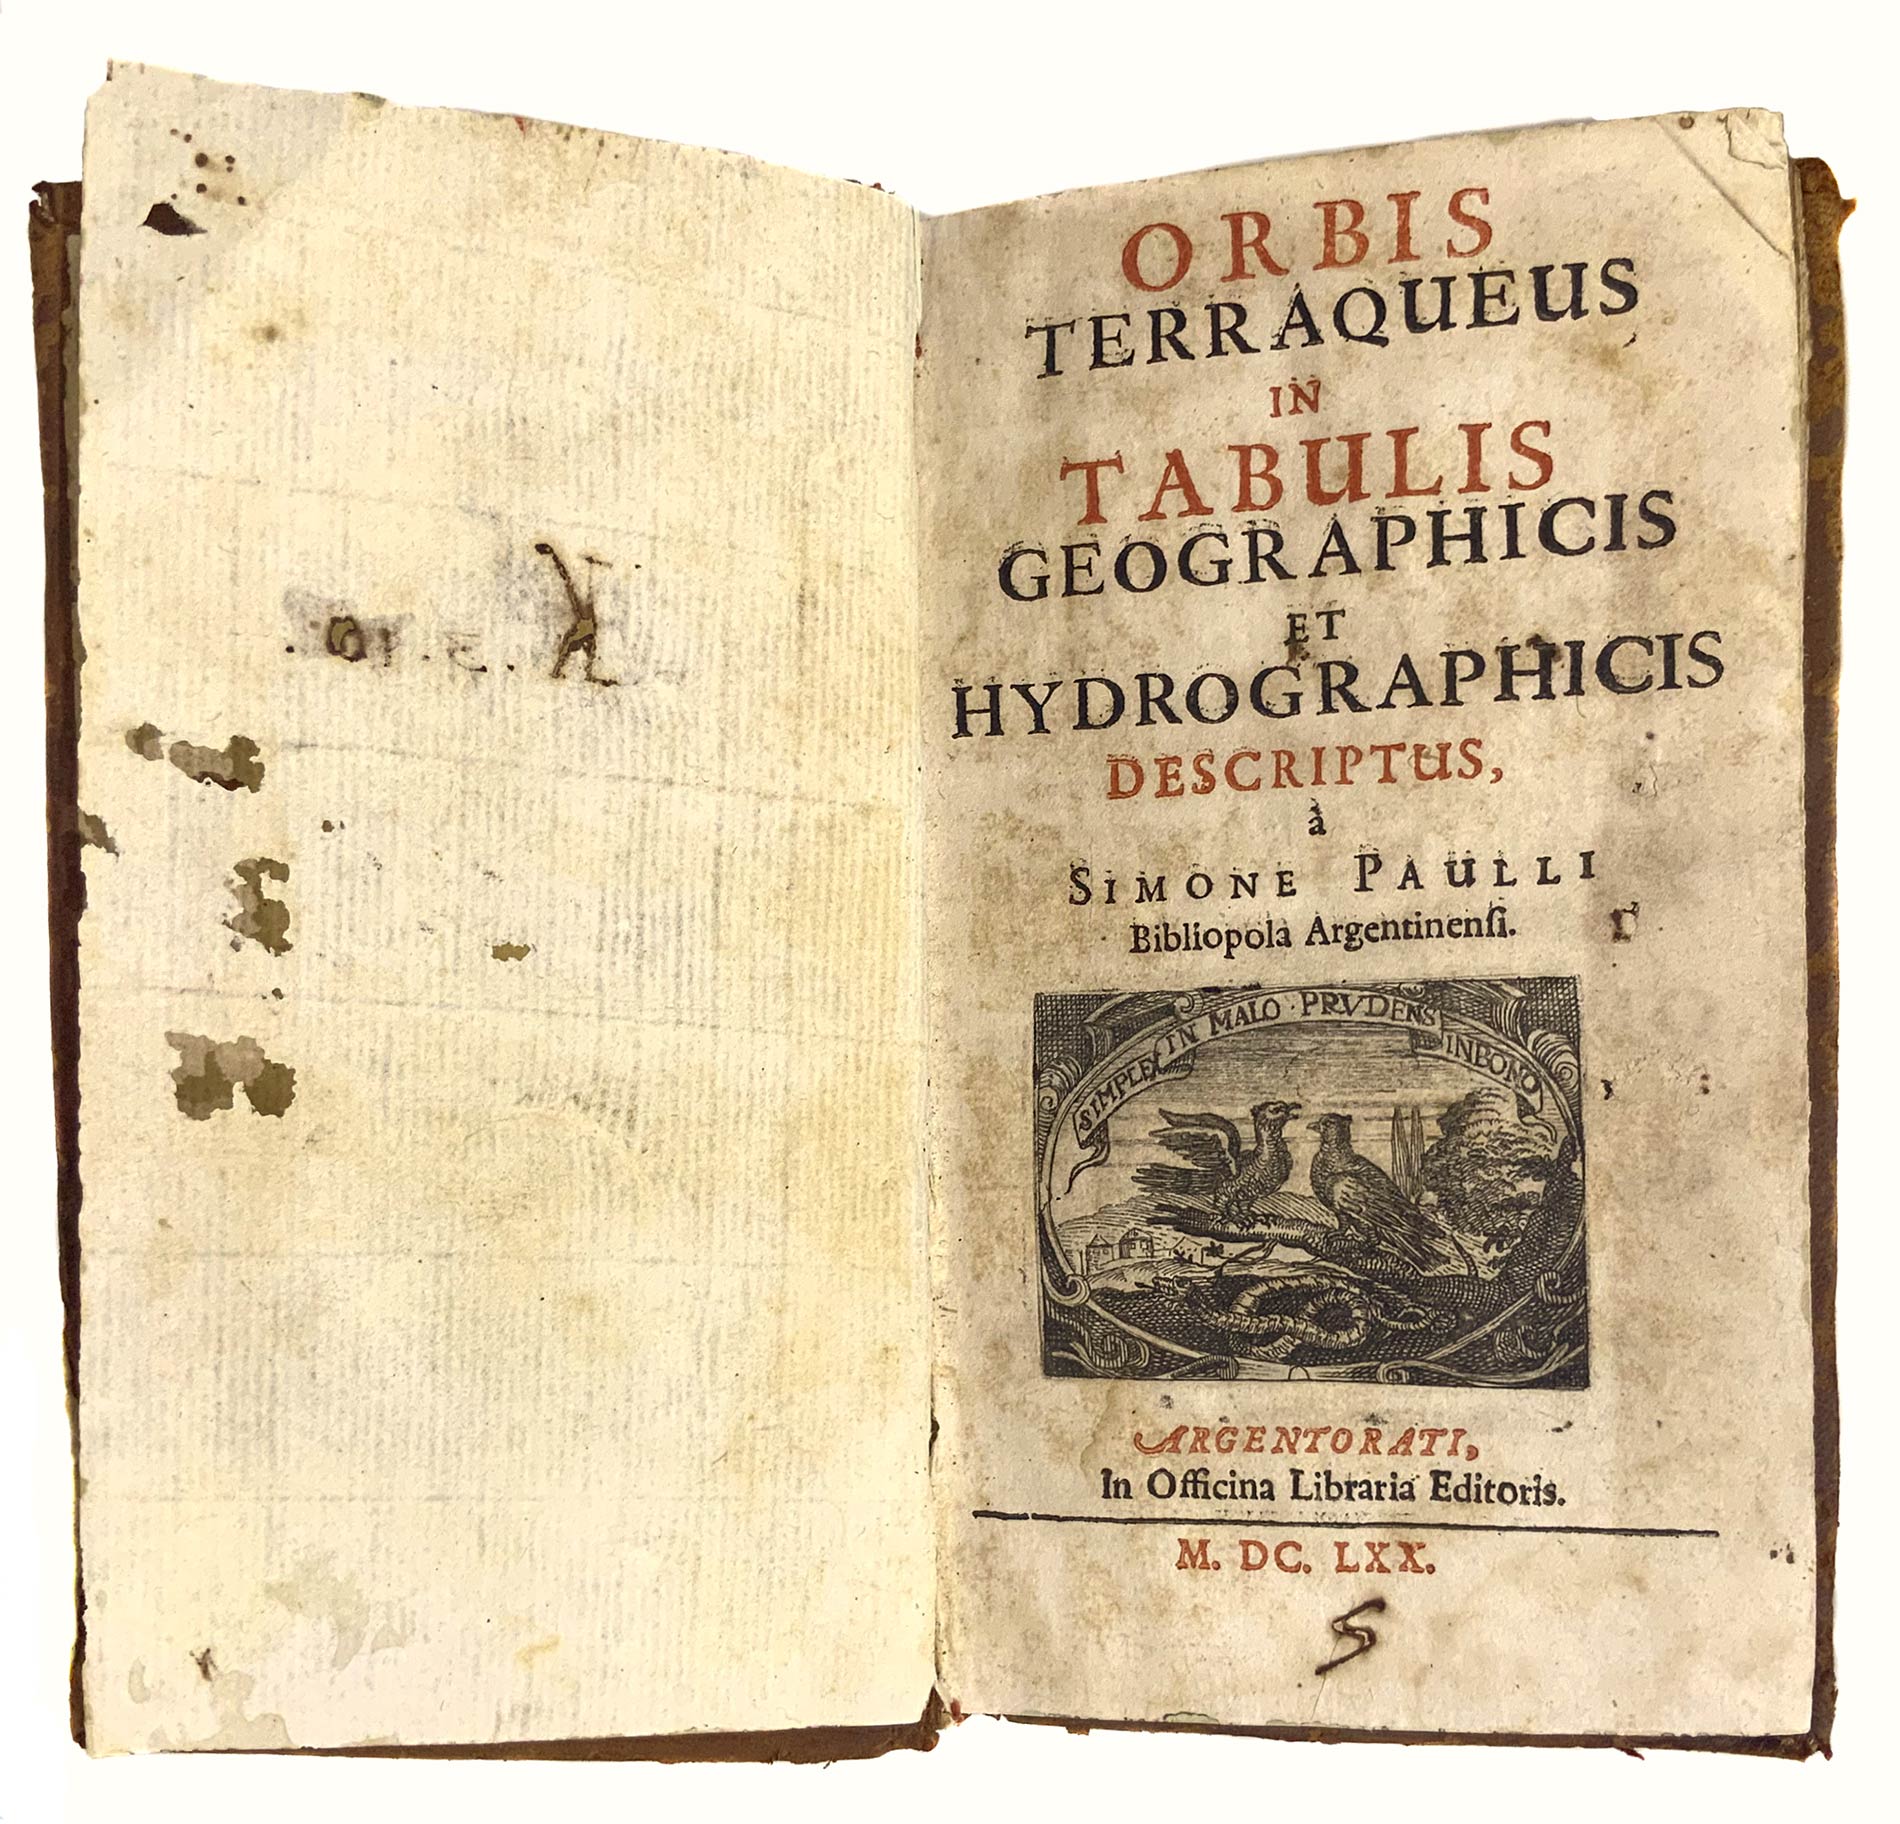 Paulli Simon, Orbis terraqueus in tabulis geographicis et hydrographicis descriptus, to Simone